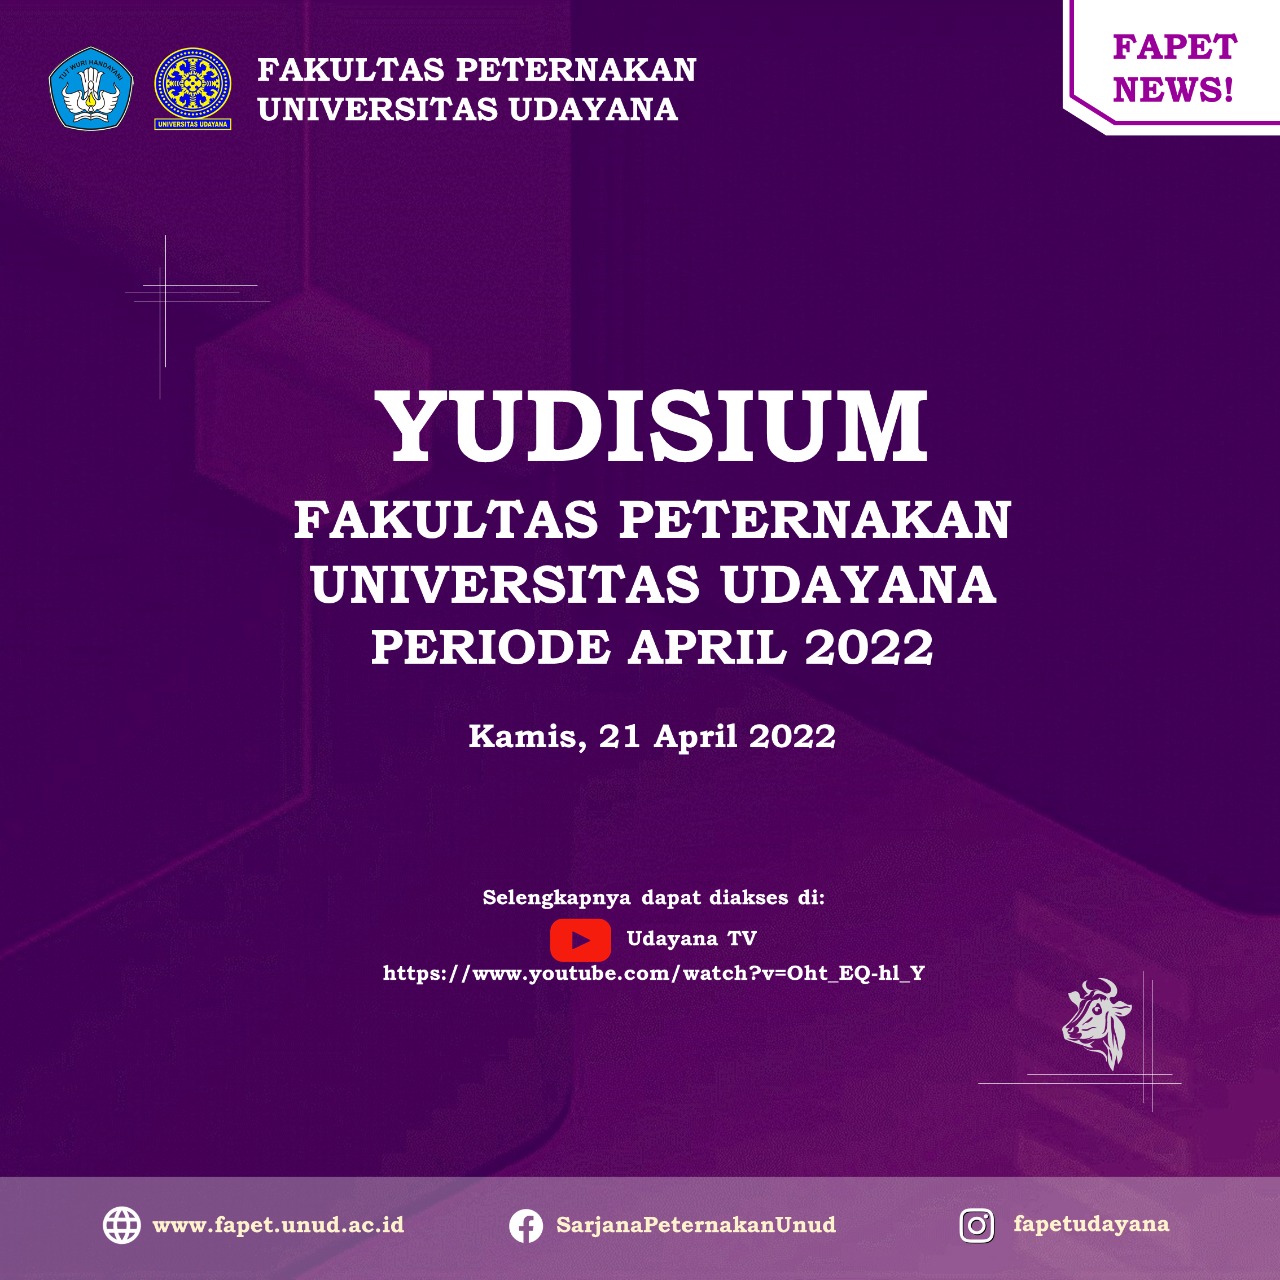 Fakultas Peternakan Universitas Udayana Gelar Yudisium Periode April 2022